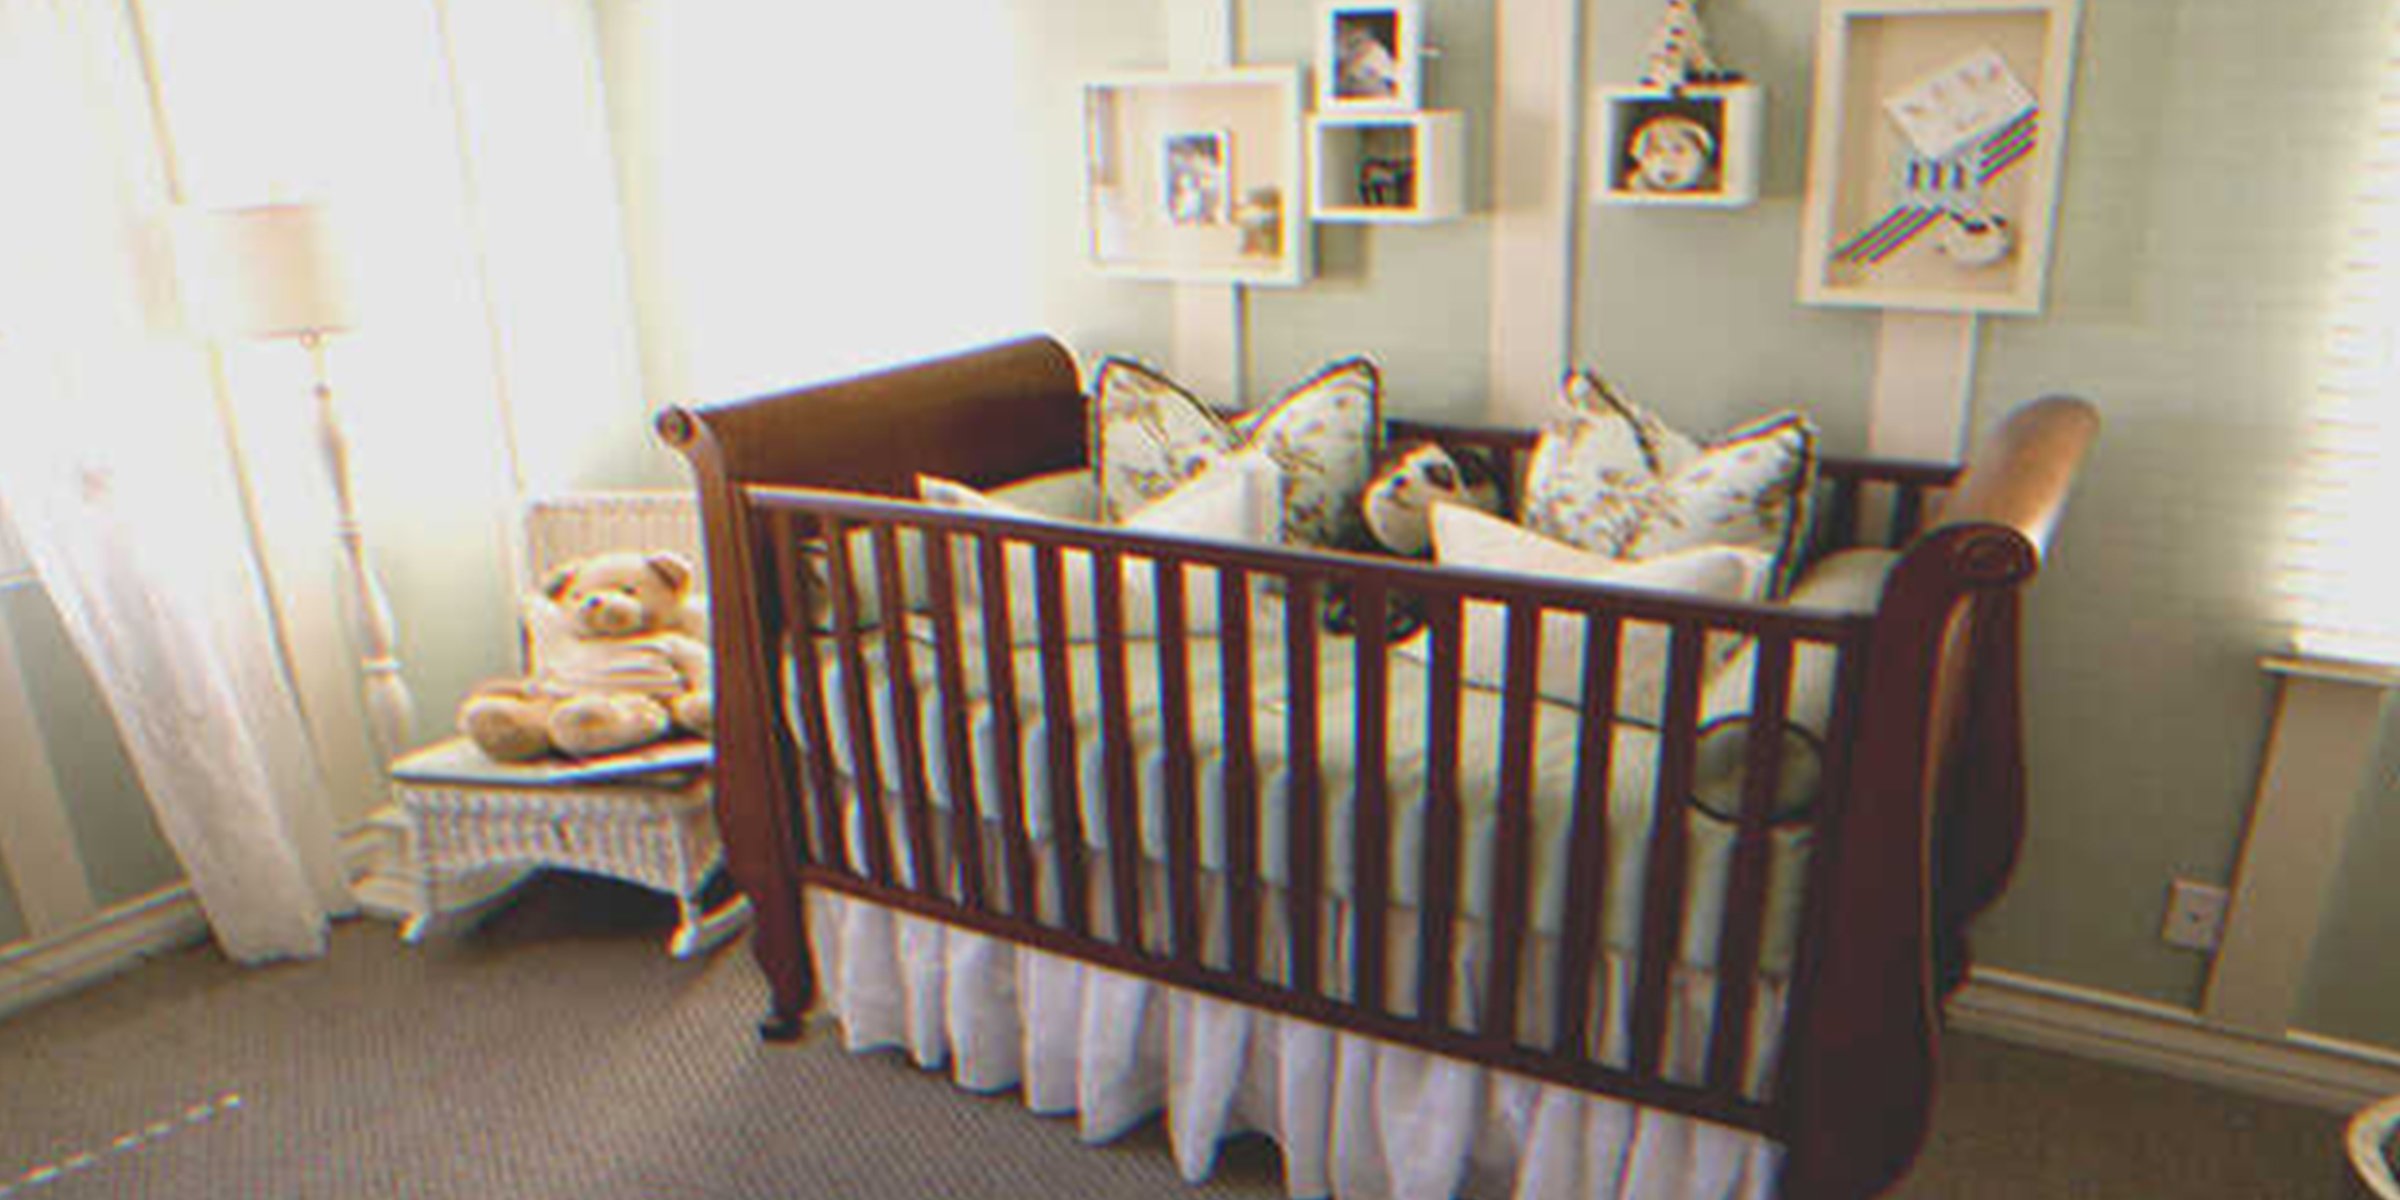 Ein Kinderbett | Quelle: Shutterstock